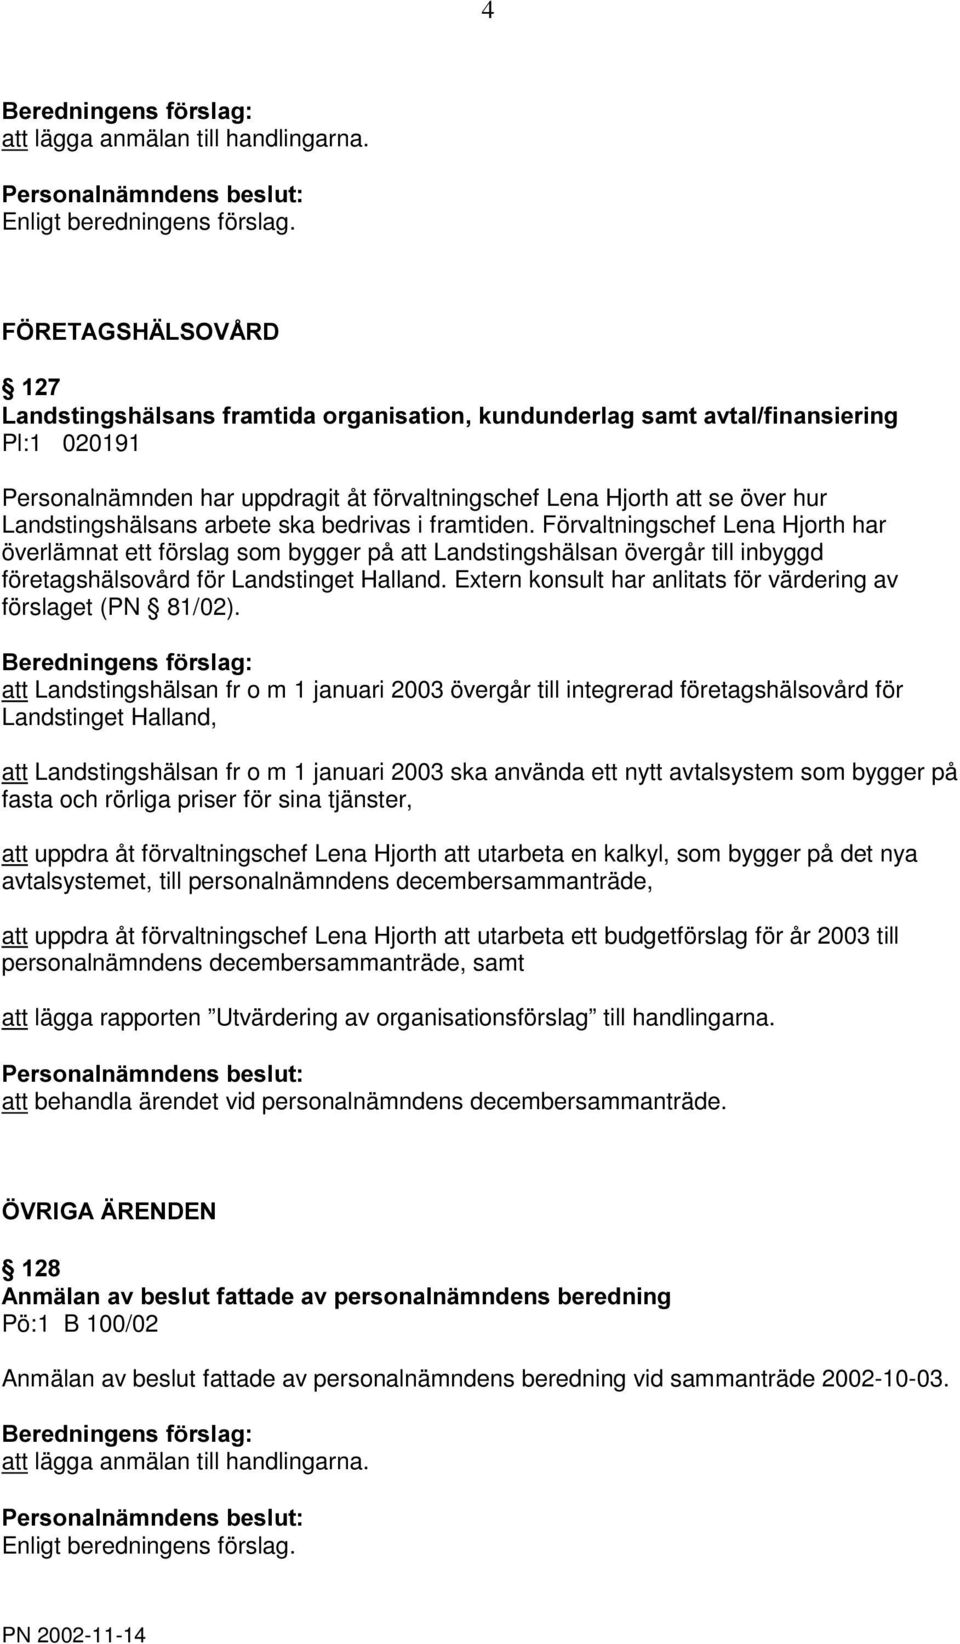 arbete ska bedrivas i framtiden. Förvaltningschef Lena Hjorth har överlämnat ett förslag som bygger på att Landstingshälsan övergår till inbyggd företagshälsovård för Landstinget Halland.